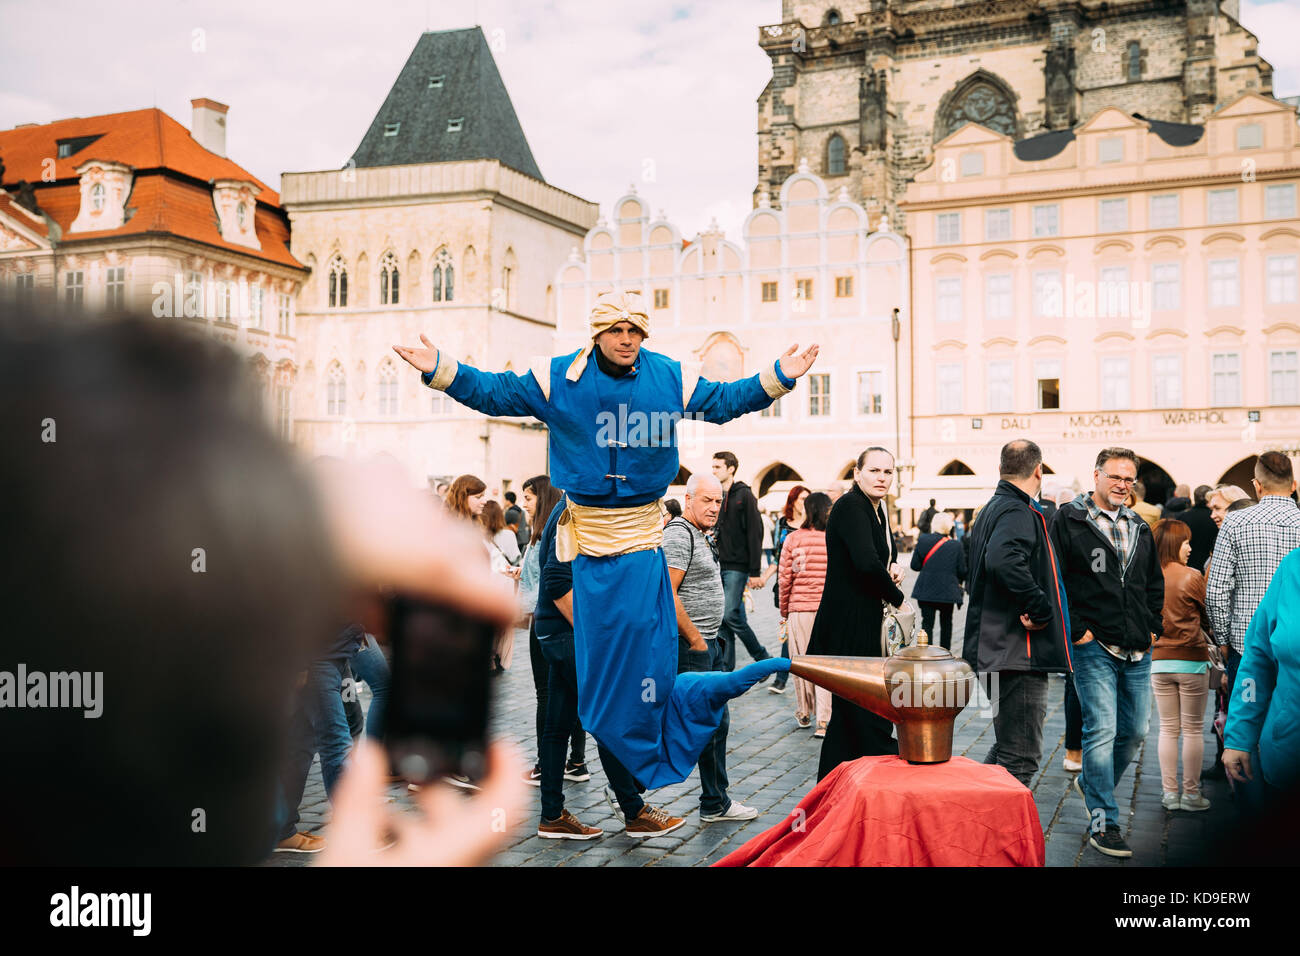 Praga, Repubblica Ceca - 22 settembre 2017: illusionista in forma di gin dalla lampada mostra trucchi per turisti in piazza della città vecchia. artisti di strada, levi Foto Stock